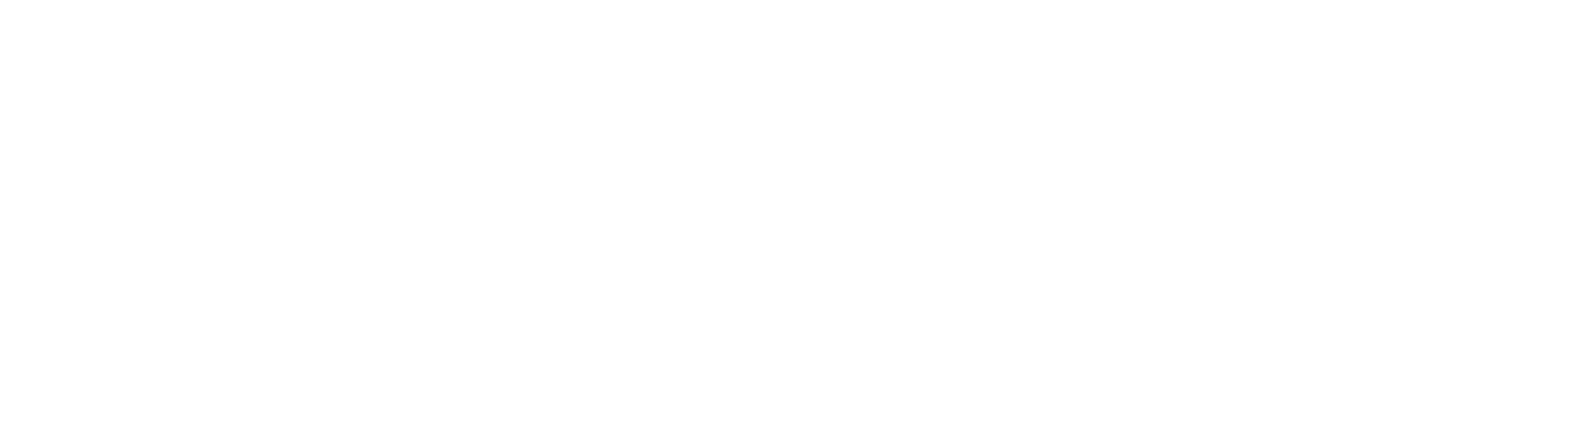 Alcon Logo groß für dunkle Hintergründe (transparentes PNG)